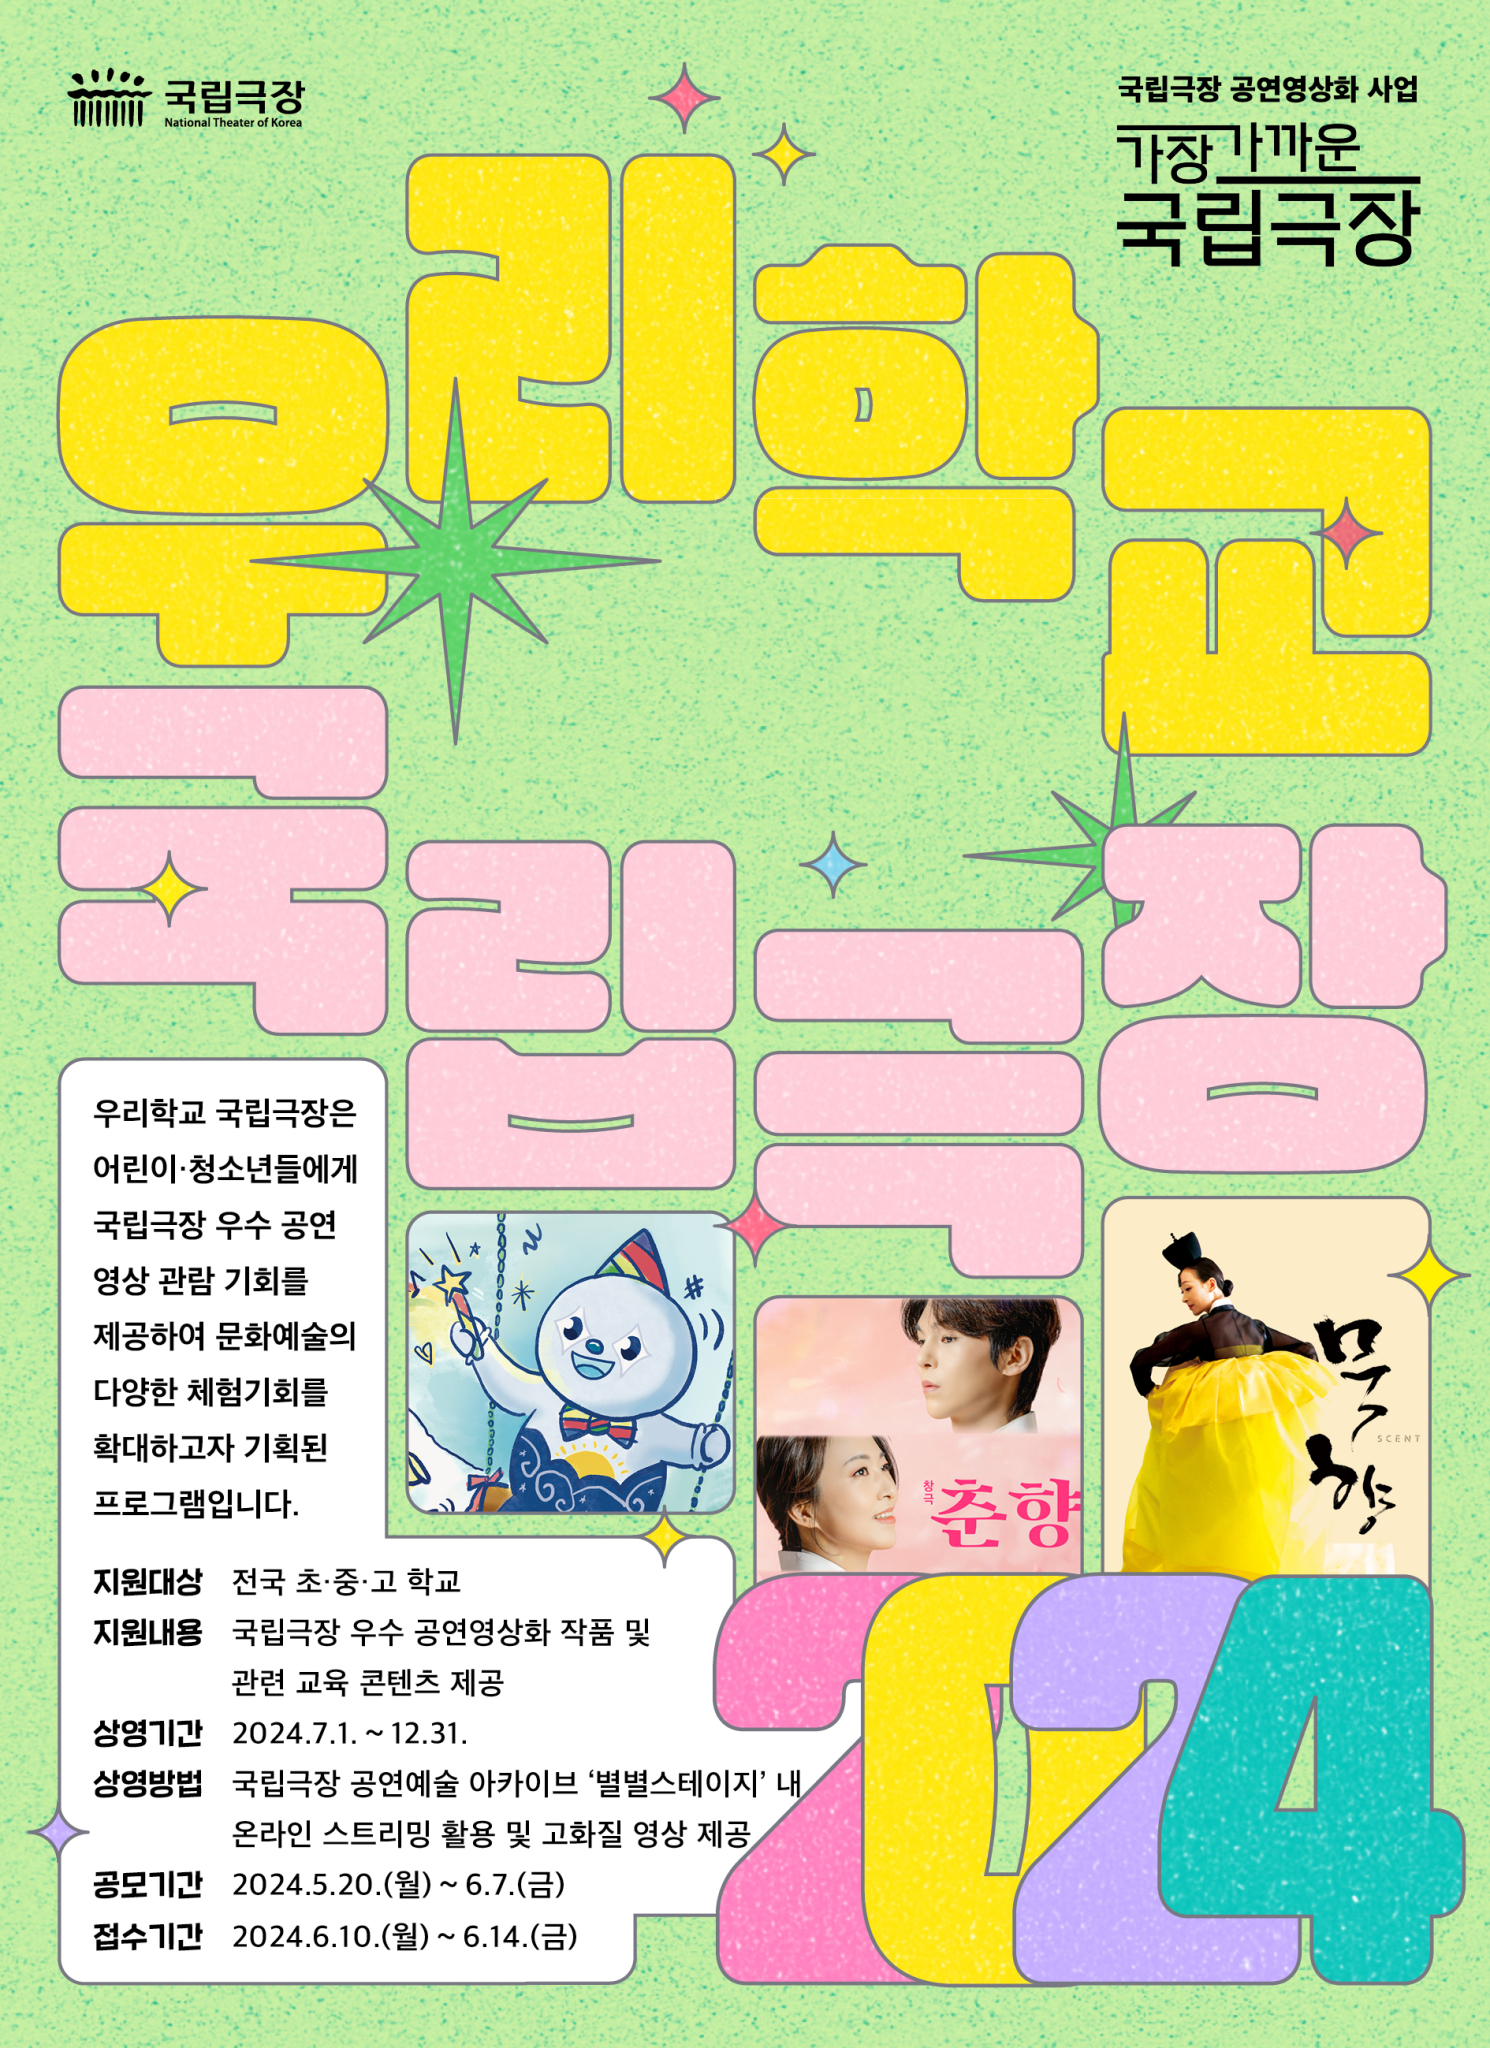 [부용초등학교-3482 (첨부) 전북특별자치도교육청 문예체건강과] 우리학교국립극장 포스터